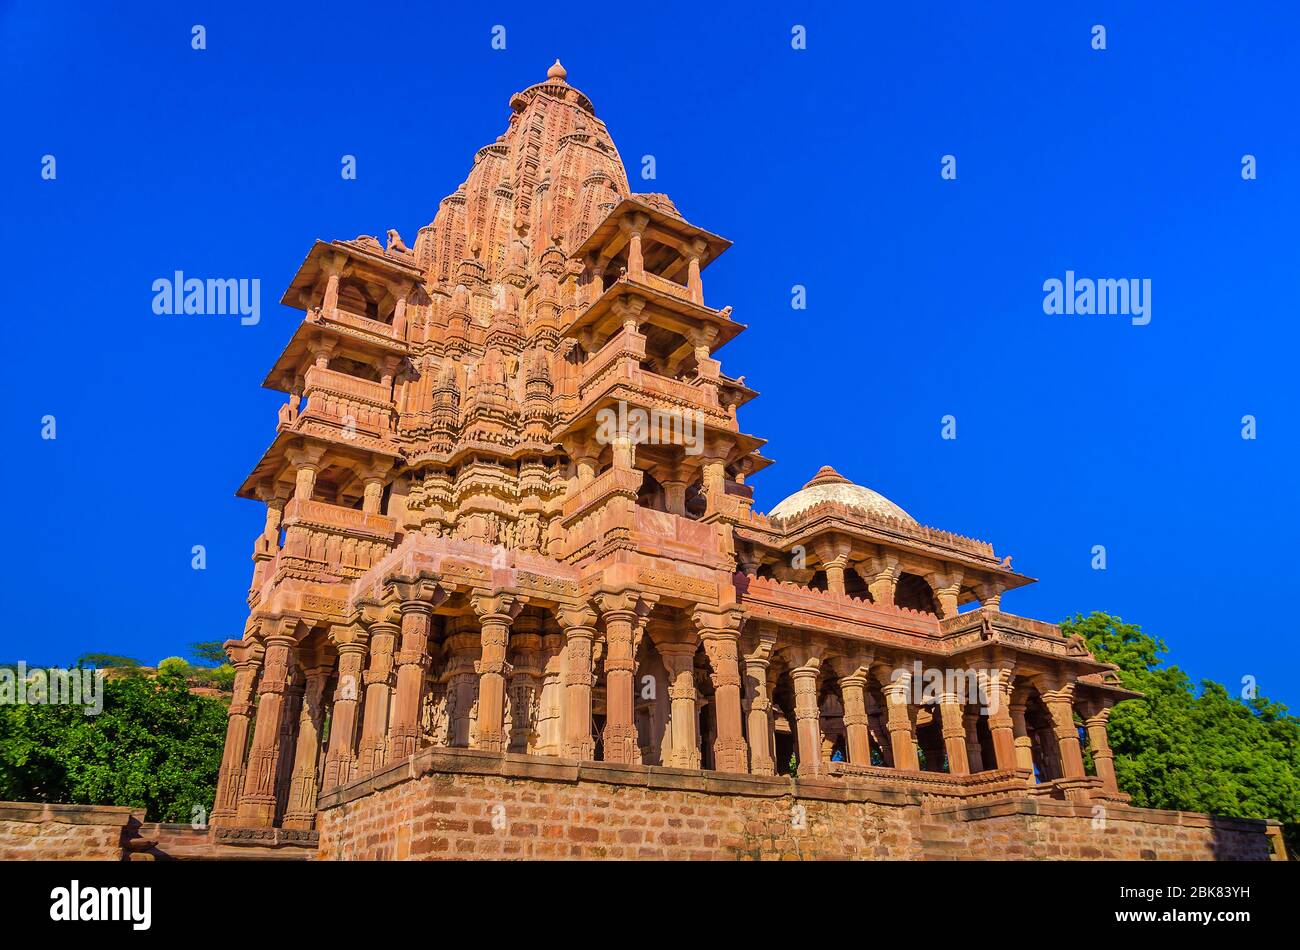 JODHPUR, INDIA – DIC. 02, 2019: Los 'jardines de Mandore' es una colección de templos y monumentos, es otra atracción importante cerca de Jodhpur. Foto de stock